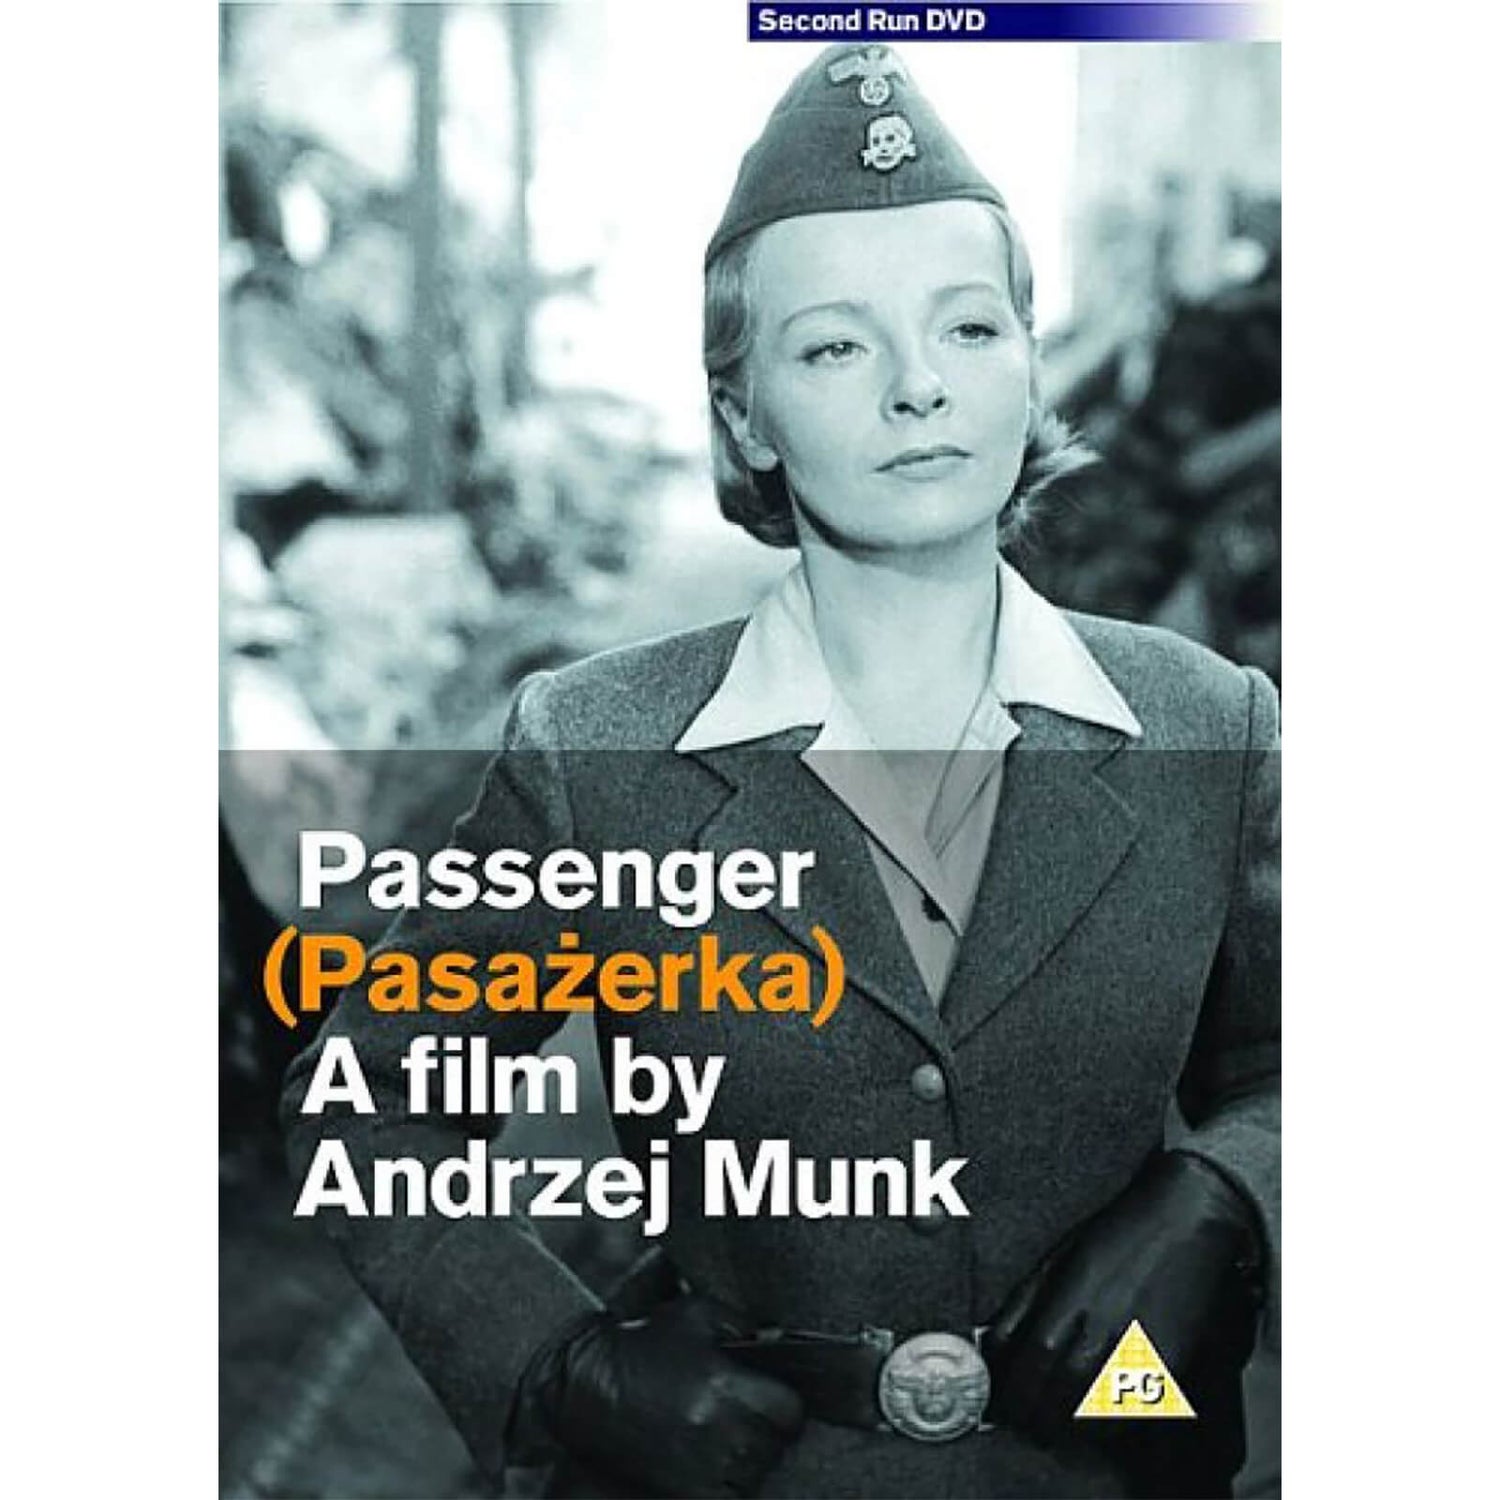 The Passenger (Pasazerka)